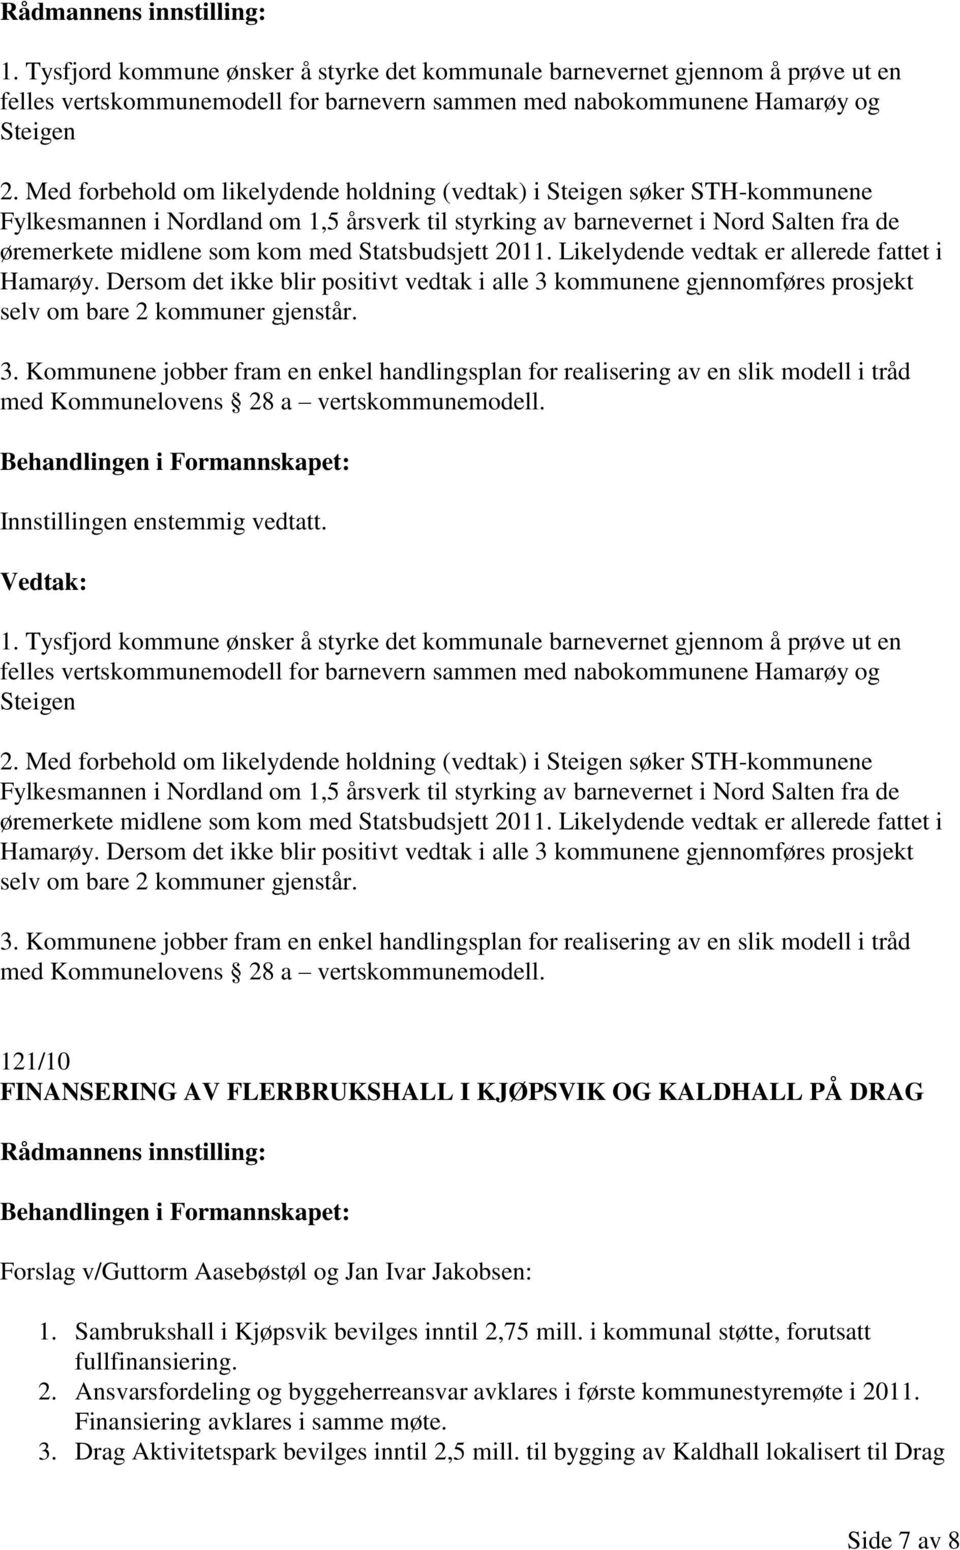 Statsbudsjett 2011. Likelydende vedtak er allerede fattet i Hamarøy. Dersom det ikke blir positivt vedtak i alle 3 